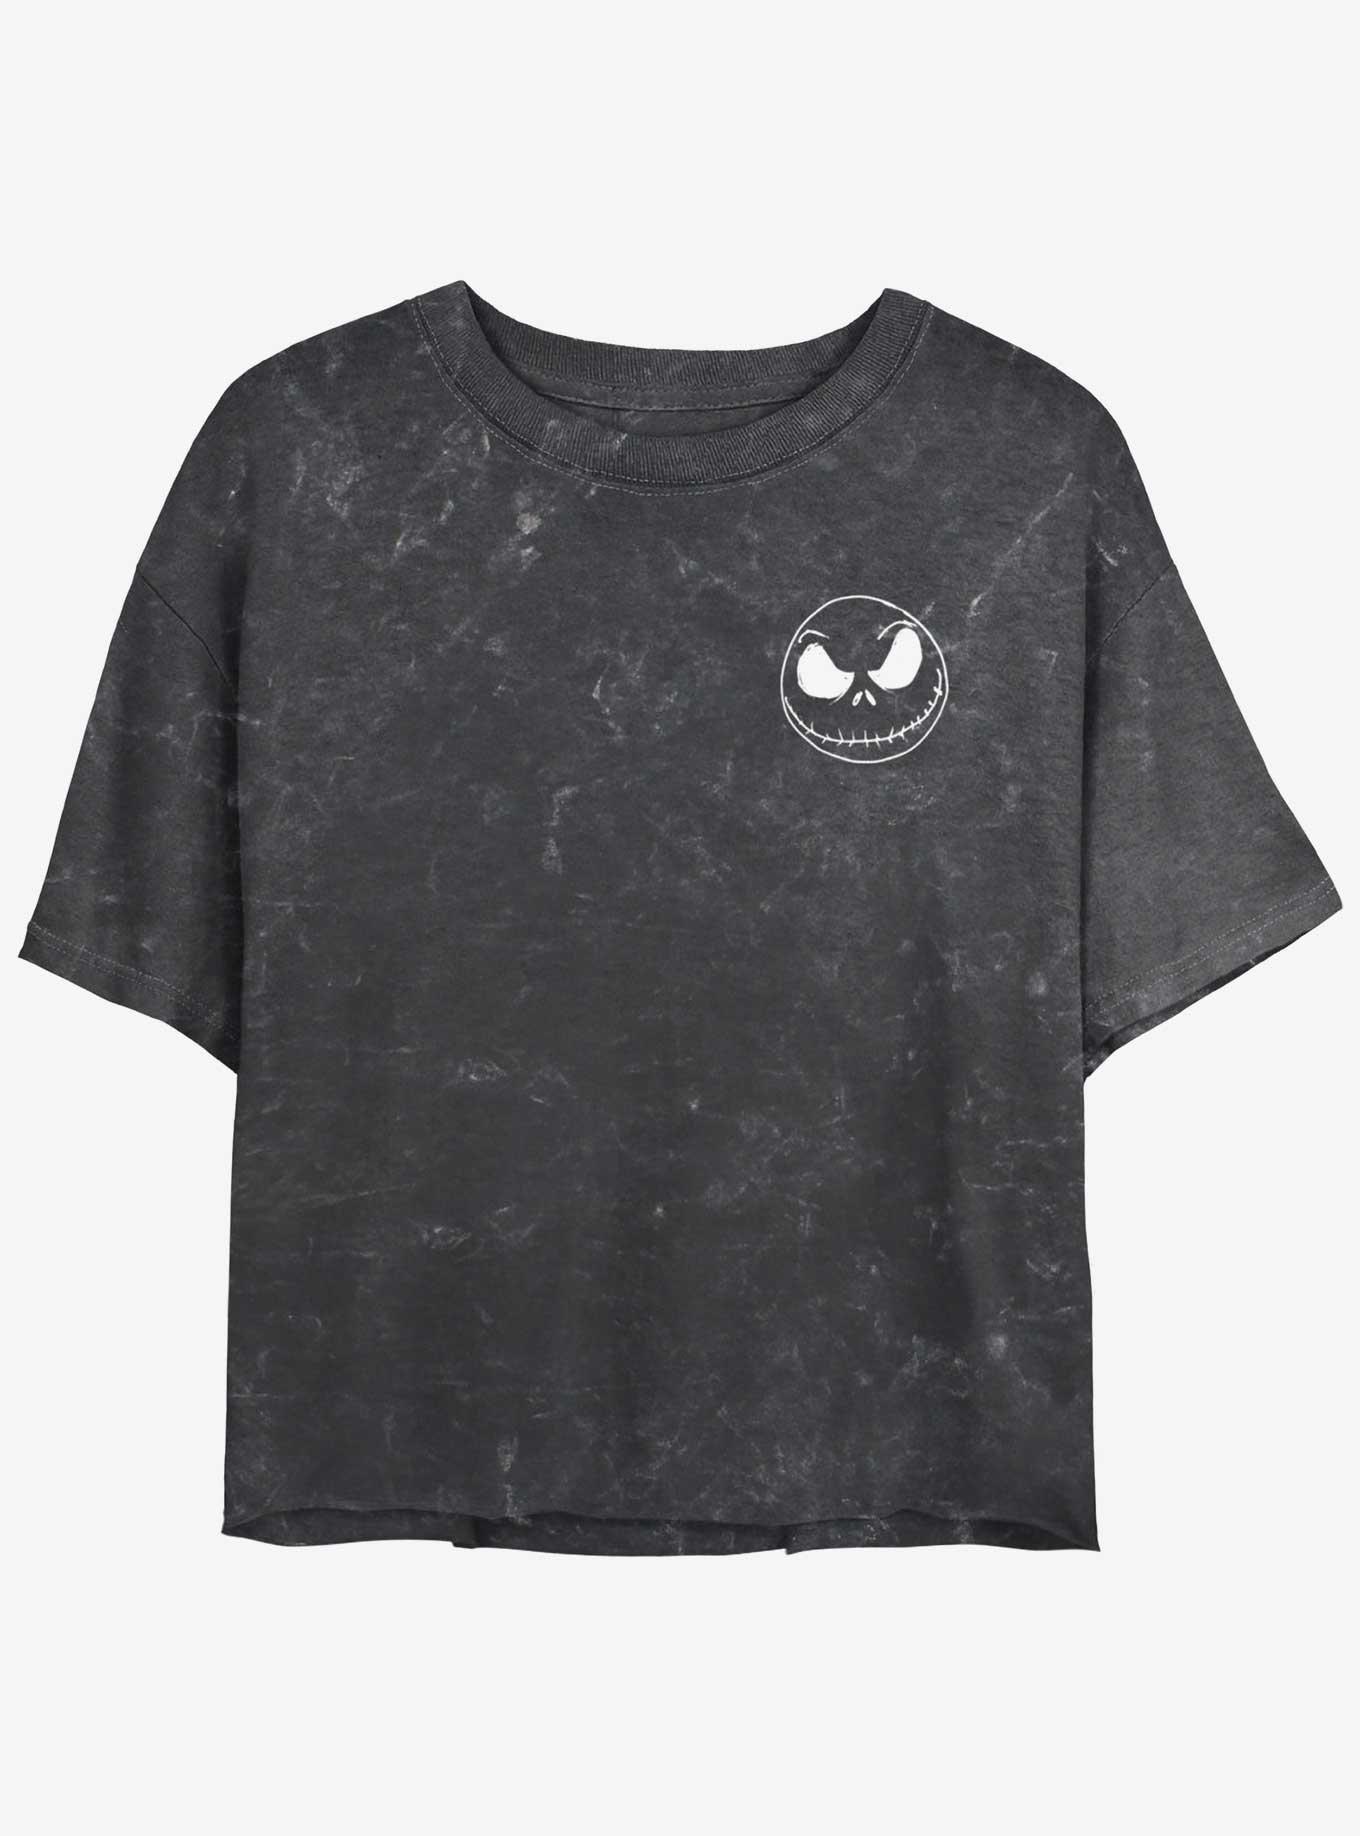 Disney The Nightmare Before Christmas Jack Skellington Pocket Mineral Wash Girls Crop T-Shirt, BLACK, hi-res